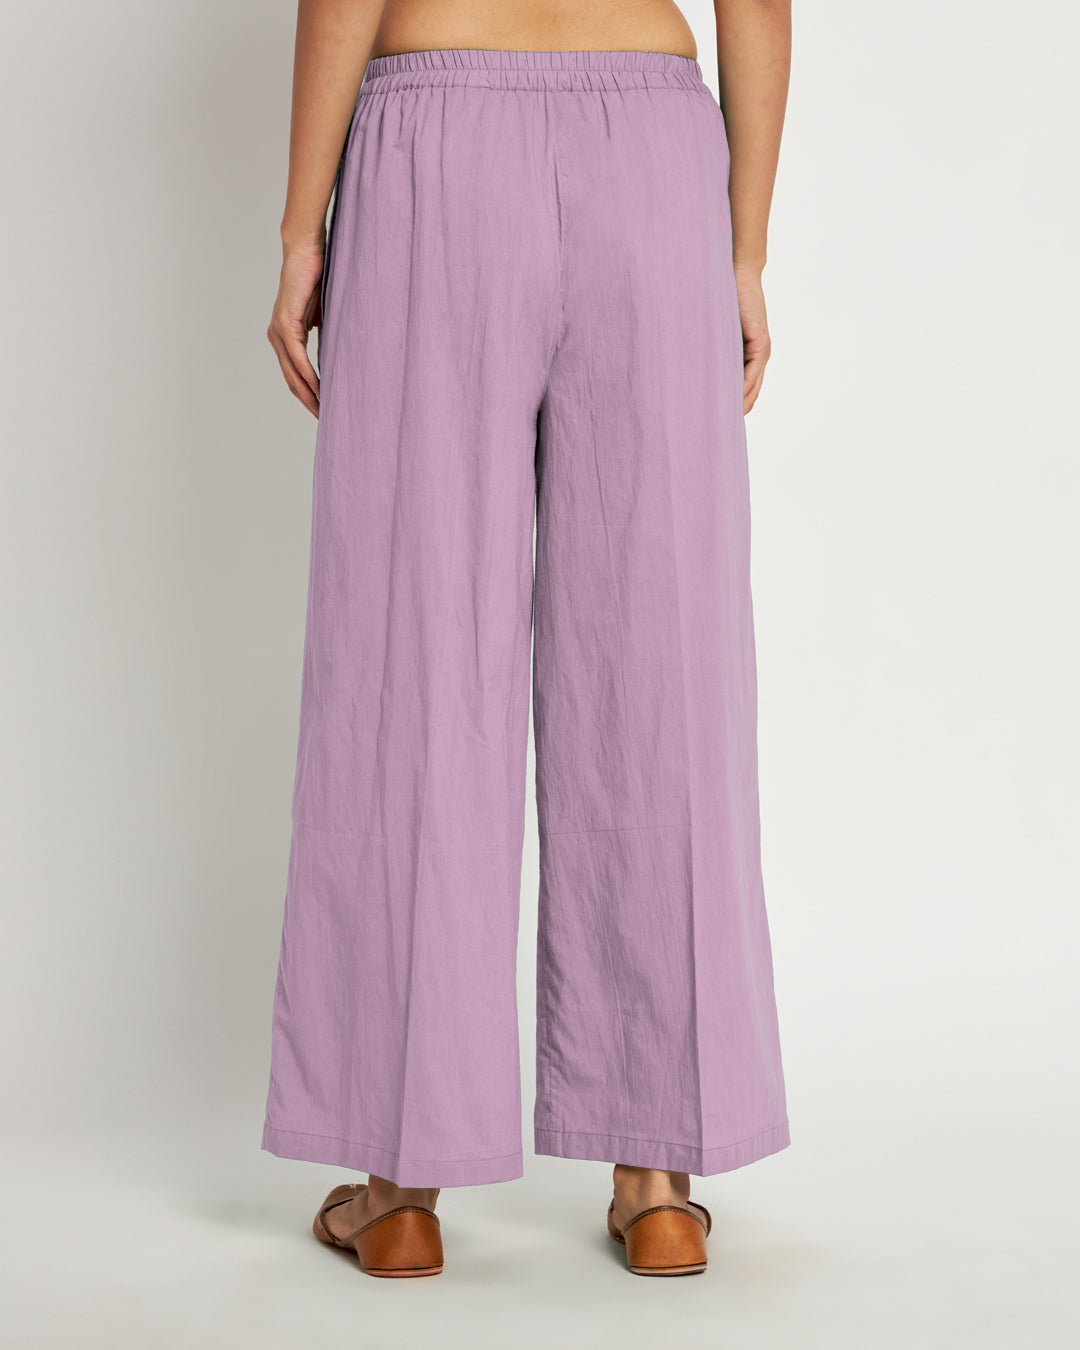 Combo: Beige & Iris Pink Wide Pants- Set Of 2